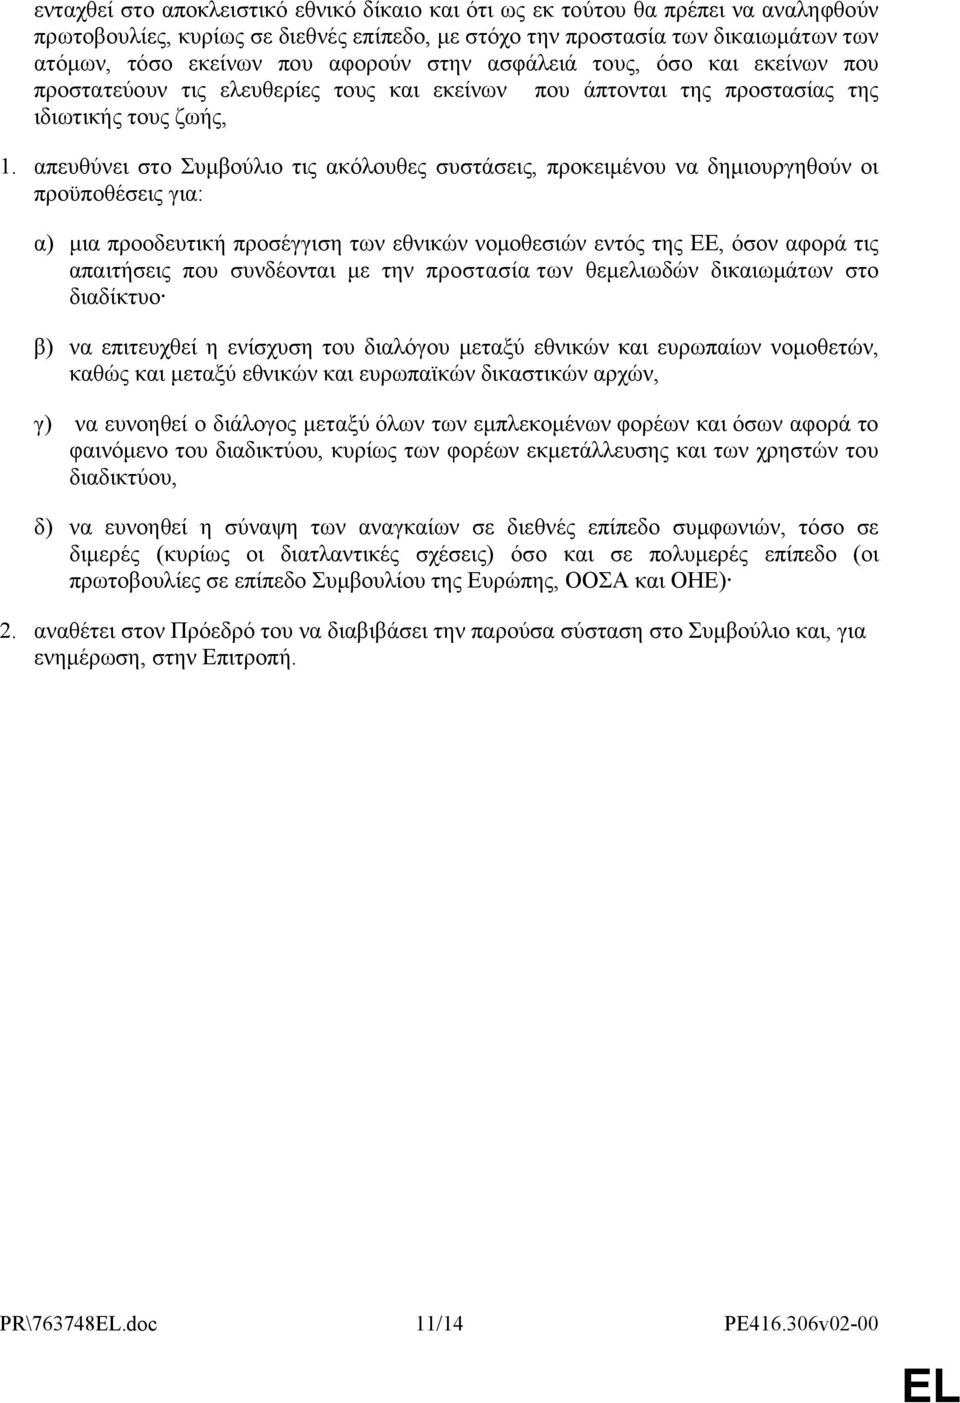 απευθύνει στο Συμβούλιο τις ακόλουθες συστάσεις, προκειμένου να δημιουργηθούν οι προϋποθέσεις για: α) μια προοδευτική προσέγγιση των εθνικών νομοθεσιών εντός της ΕΕ, όσον αφορά τις απαιτήσεις που